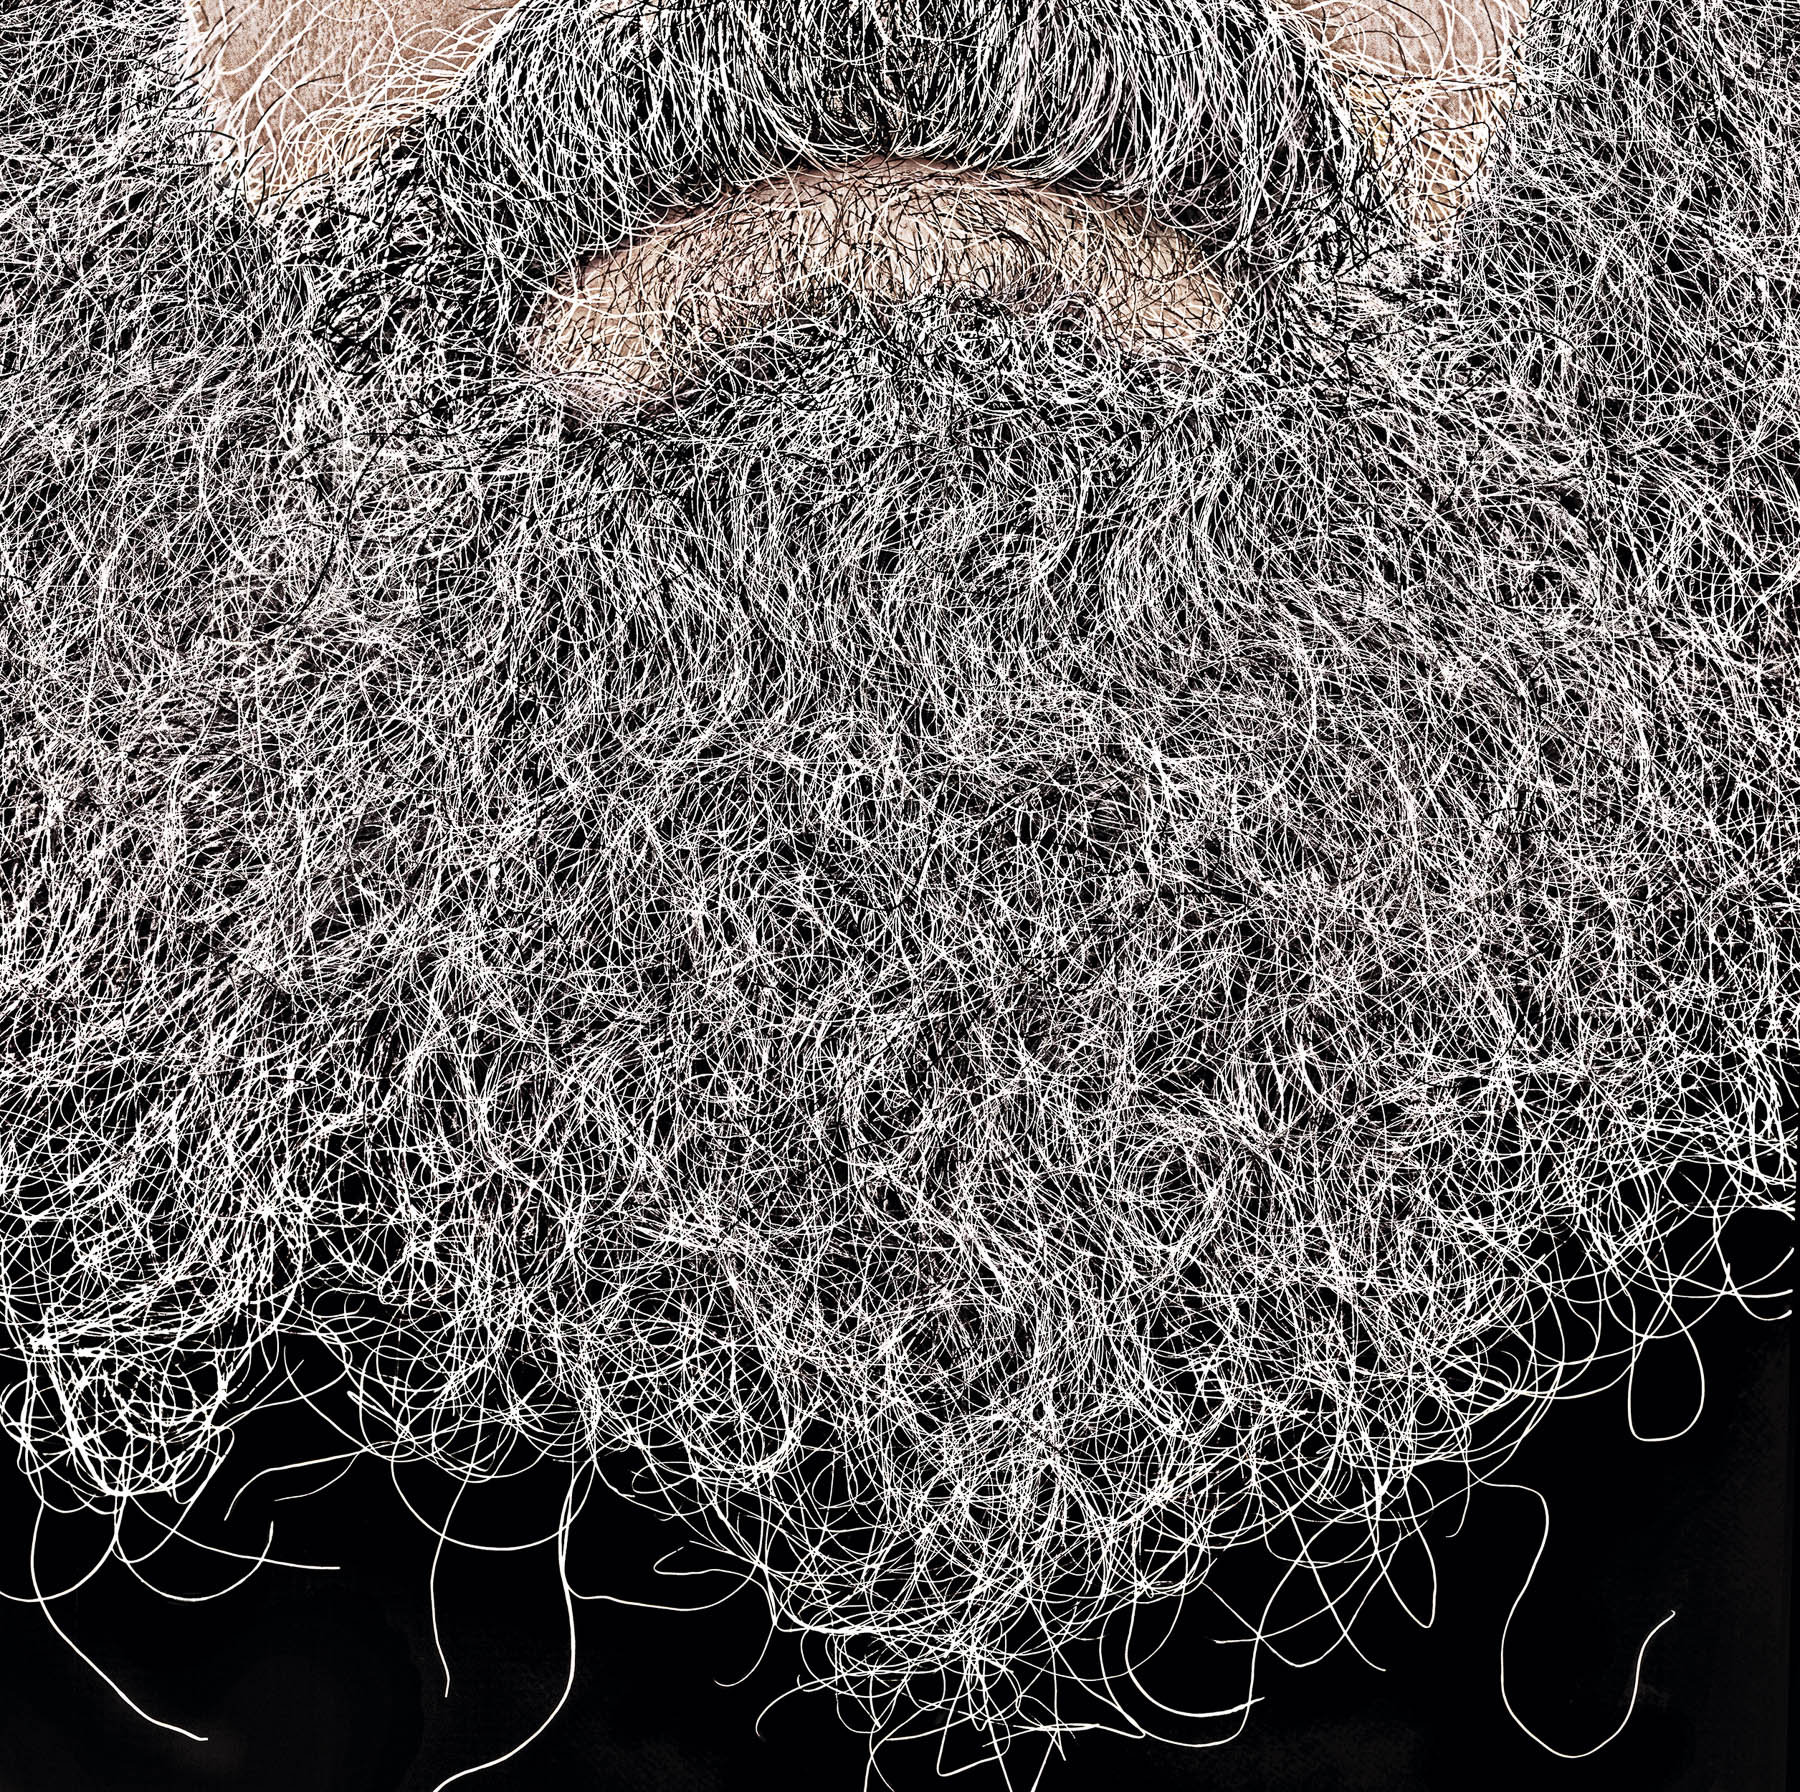 Les barbes_Dimitri Tolstoi